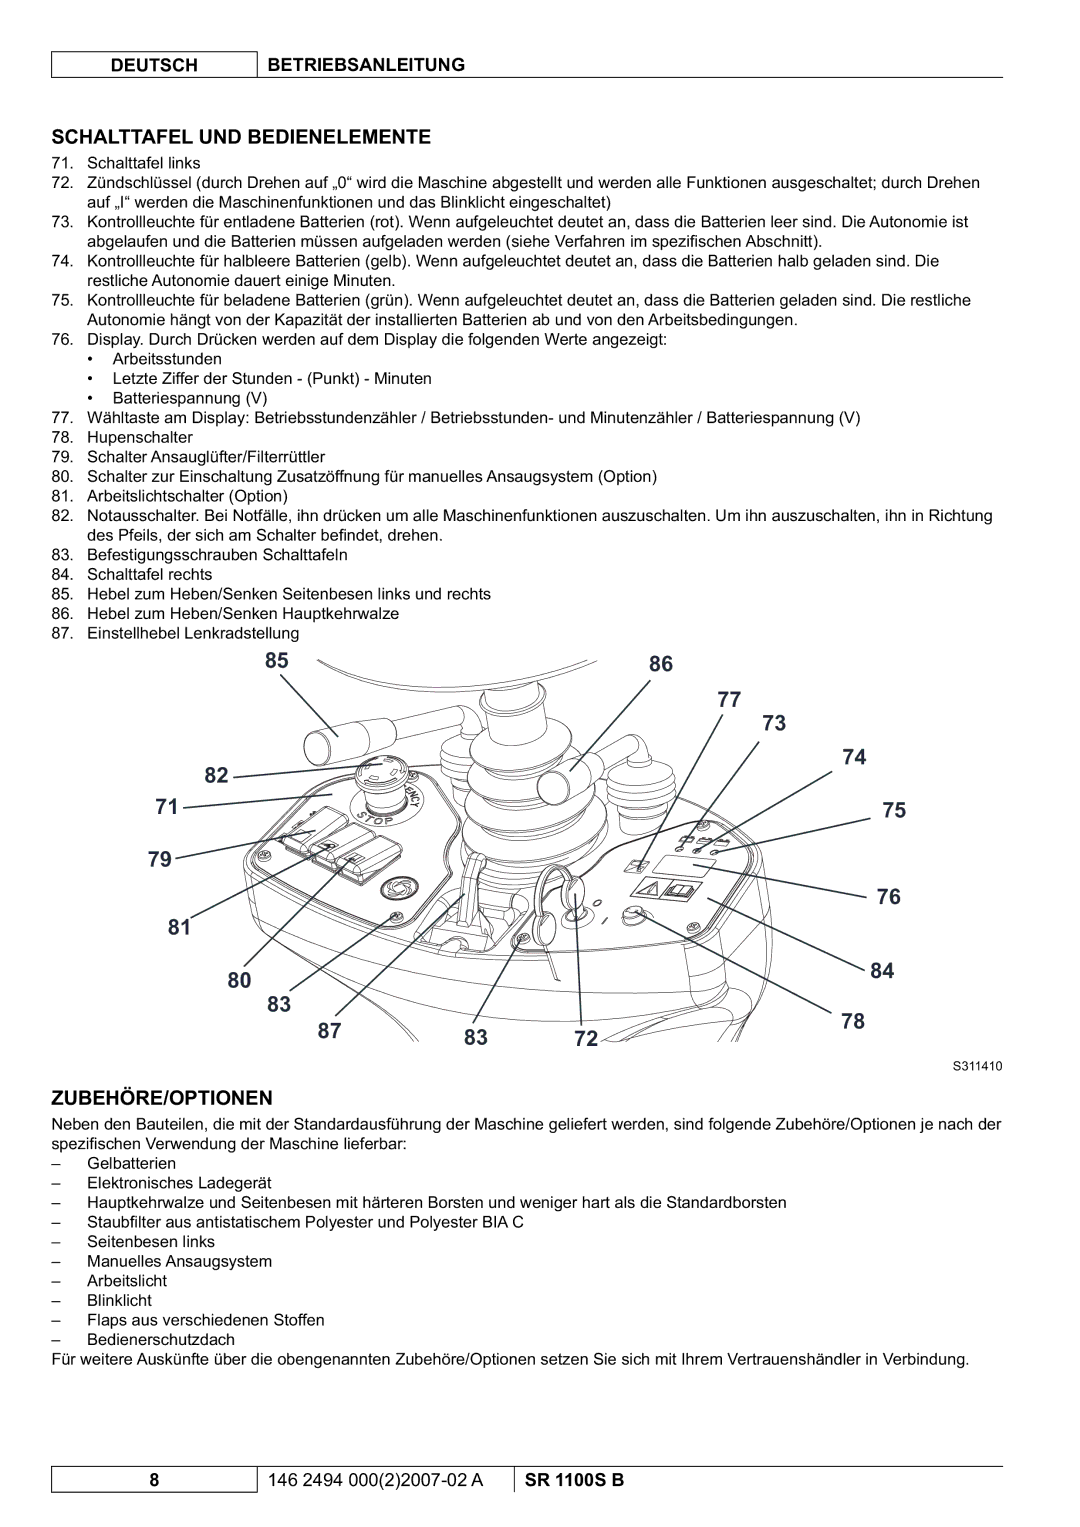 Nilfisk-Advance America SR 1100S B manual Schalttafel UND Bedienelemente, Zubehöre/Optionen 